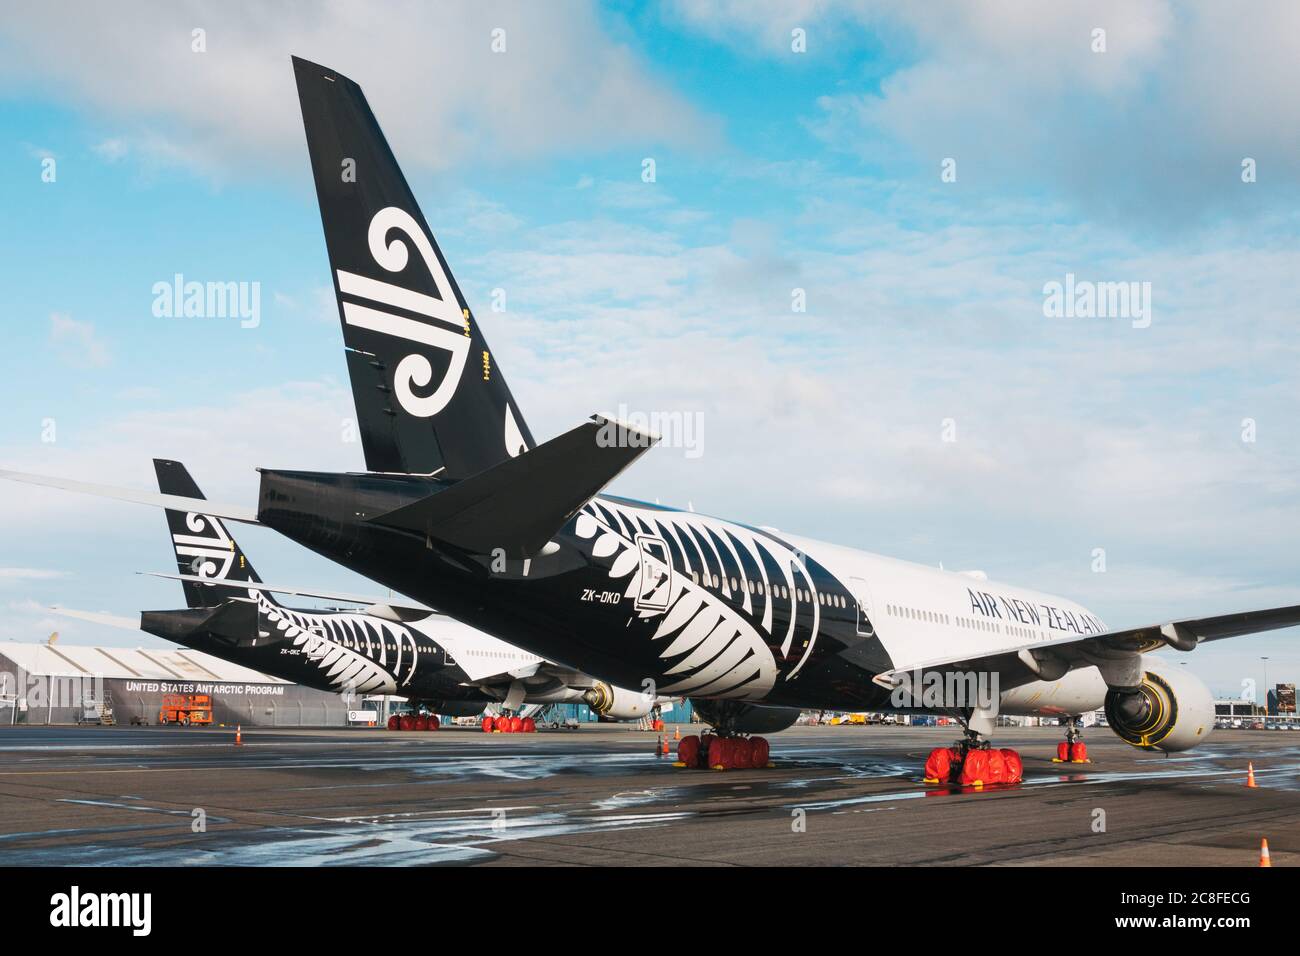 Air New Zealand Boeing 777 im Lager am Flughafen Christchurch, während der Coronavirus-Pandemie Stockfoto